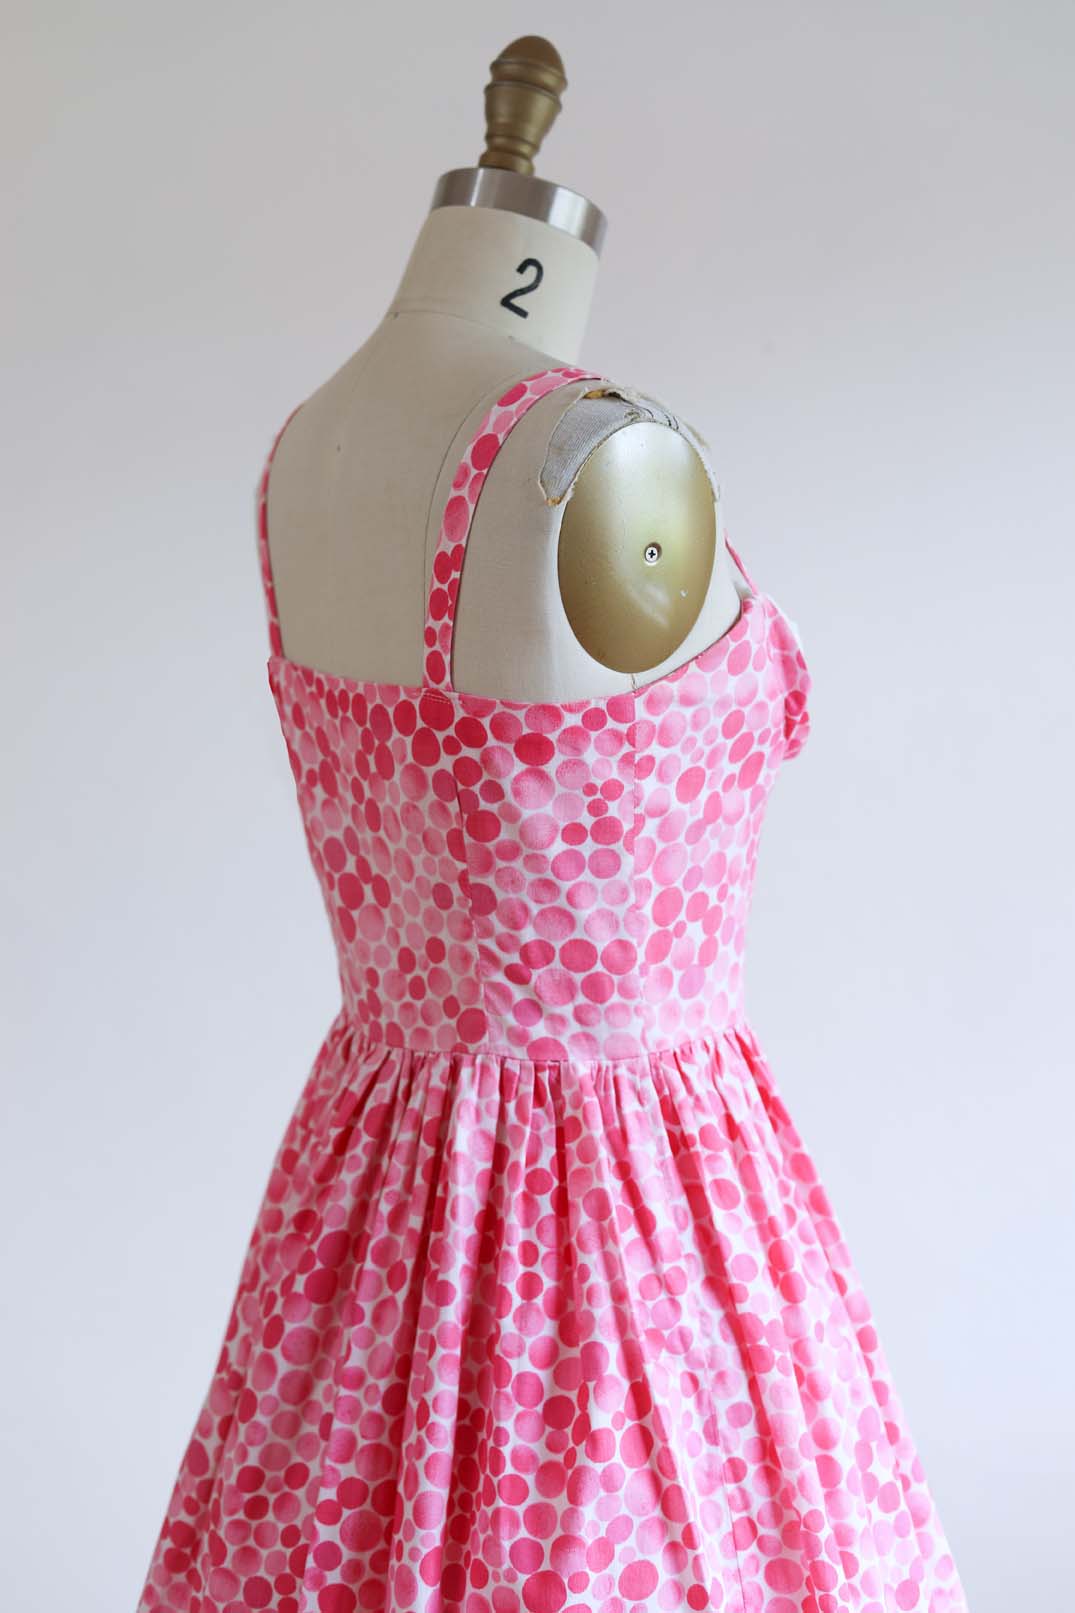 Vintage 1950s Dress - ADORABLE Novelty Bubble Print Barbie Pink White Cotton Shelf Bust Junior's Sundress Size XS